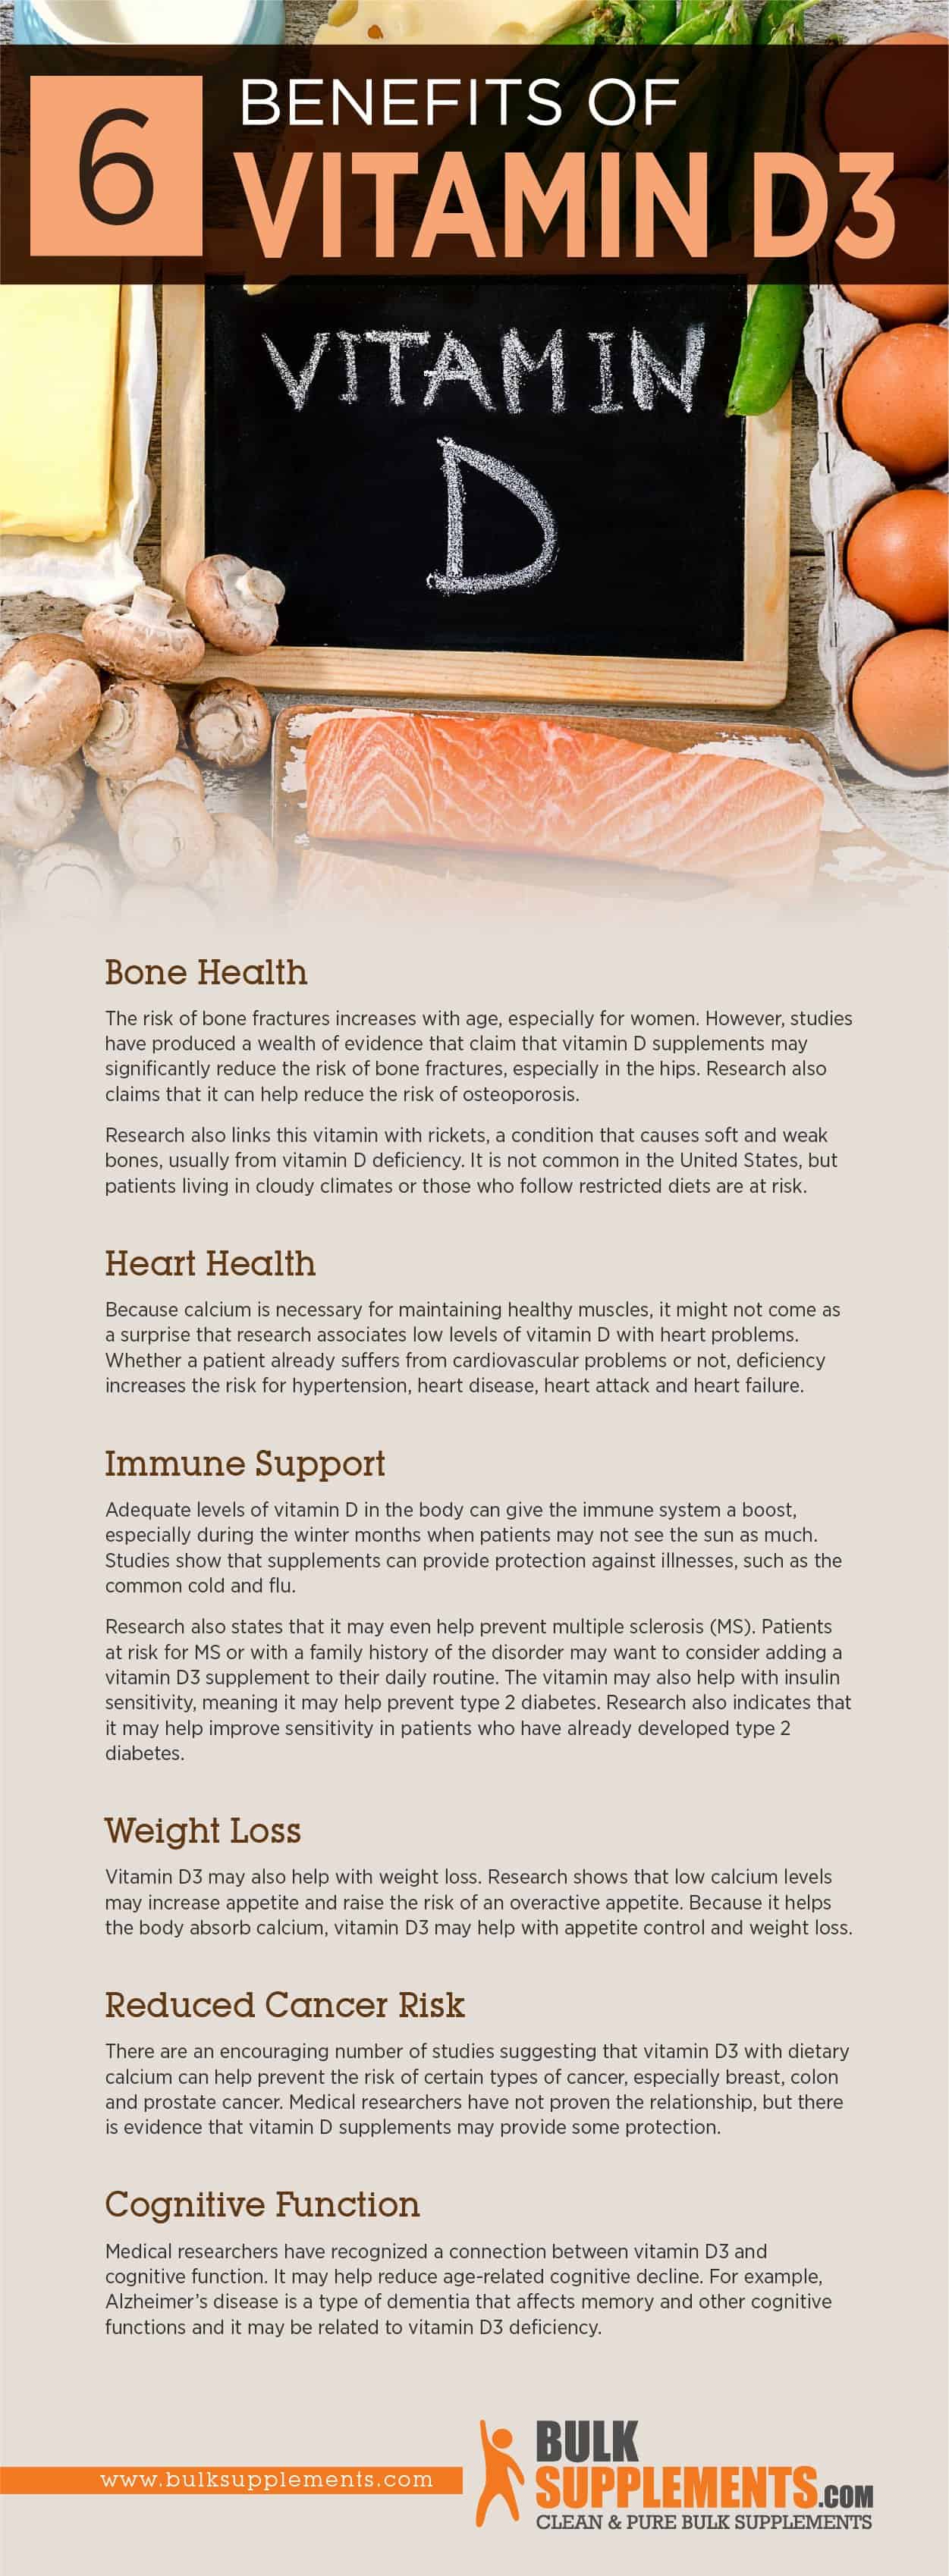 Benefits of Vitamin D3